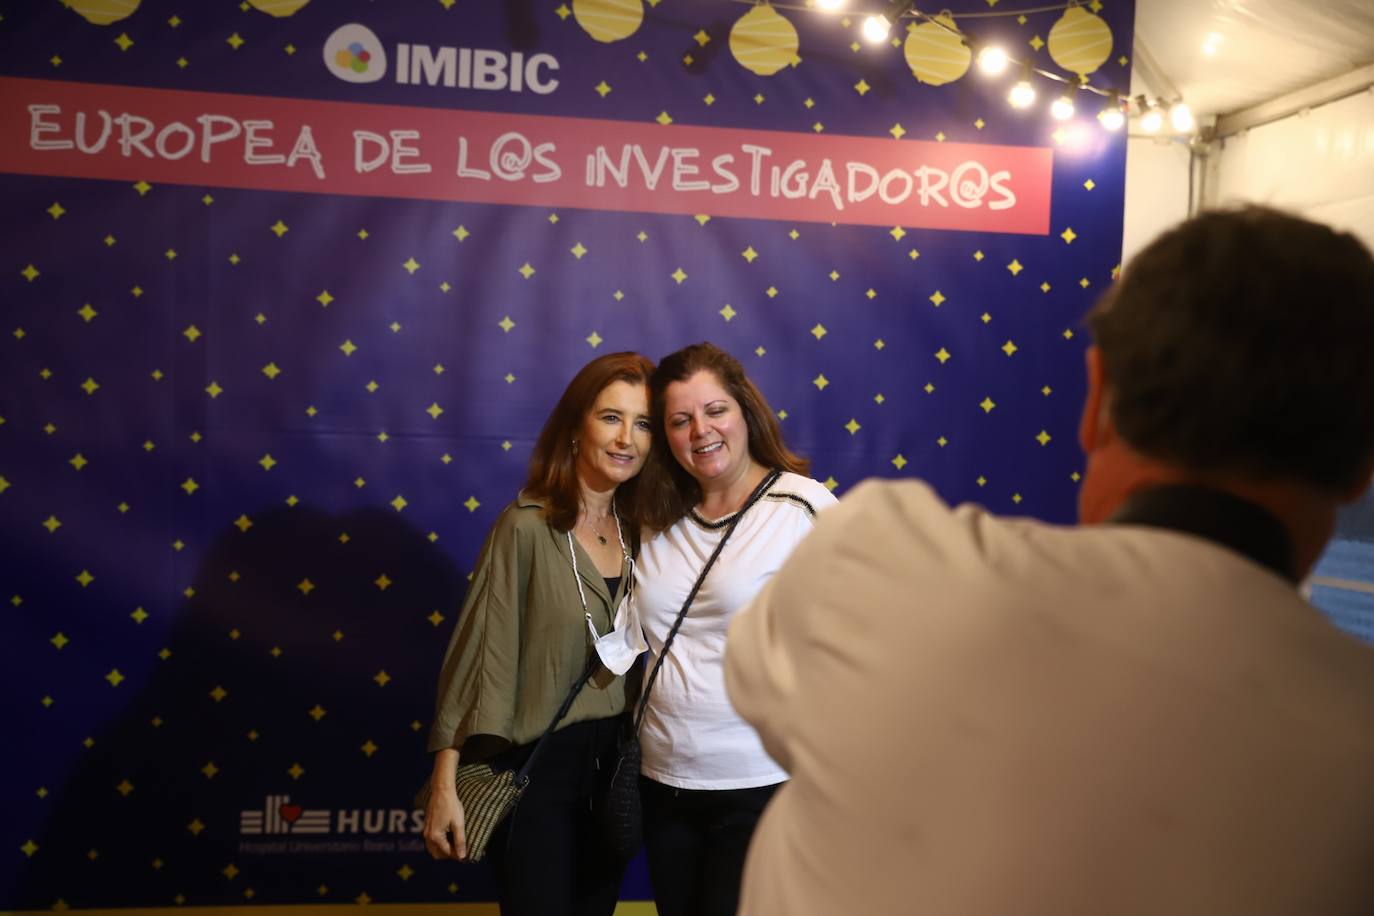 El acto del Imibic de Córdoba en la Noche de los Investigadores, en imágenes